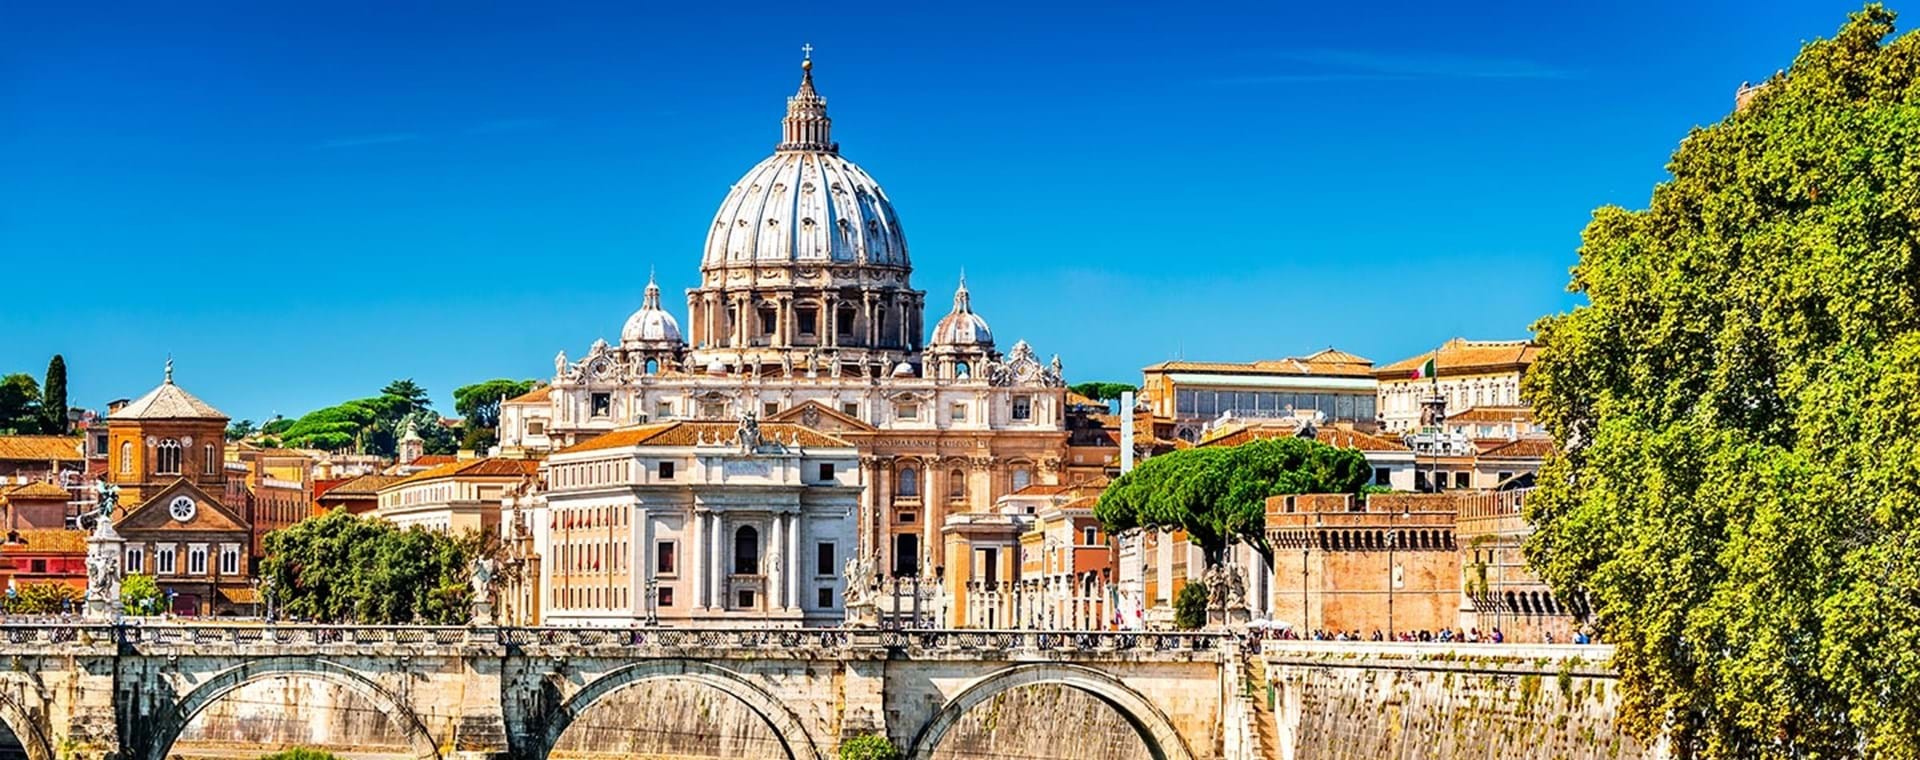 Thánh đường Vatican - điểm hẹn bất ngờ và lý thú